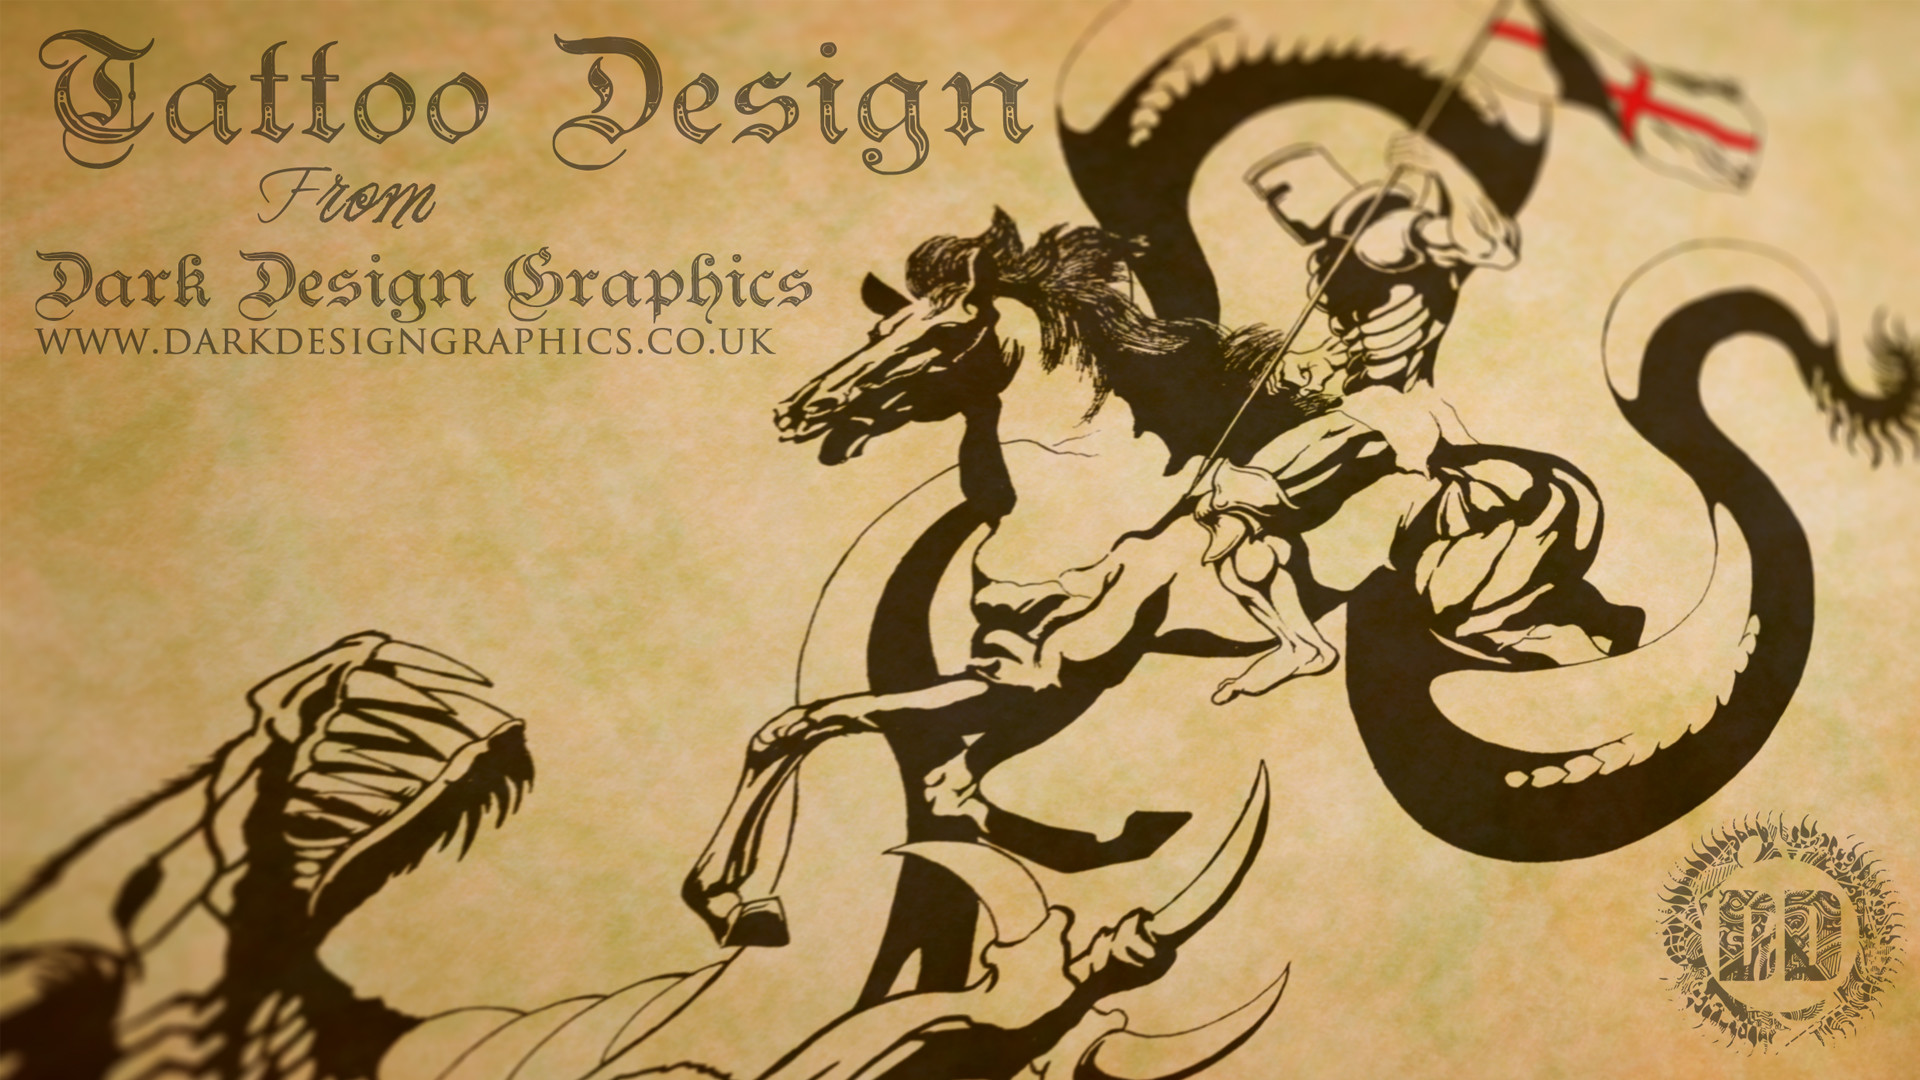 1920x1080 ... 1920Ã1080. Saint George Wallpaper from Dark Design Graphics